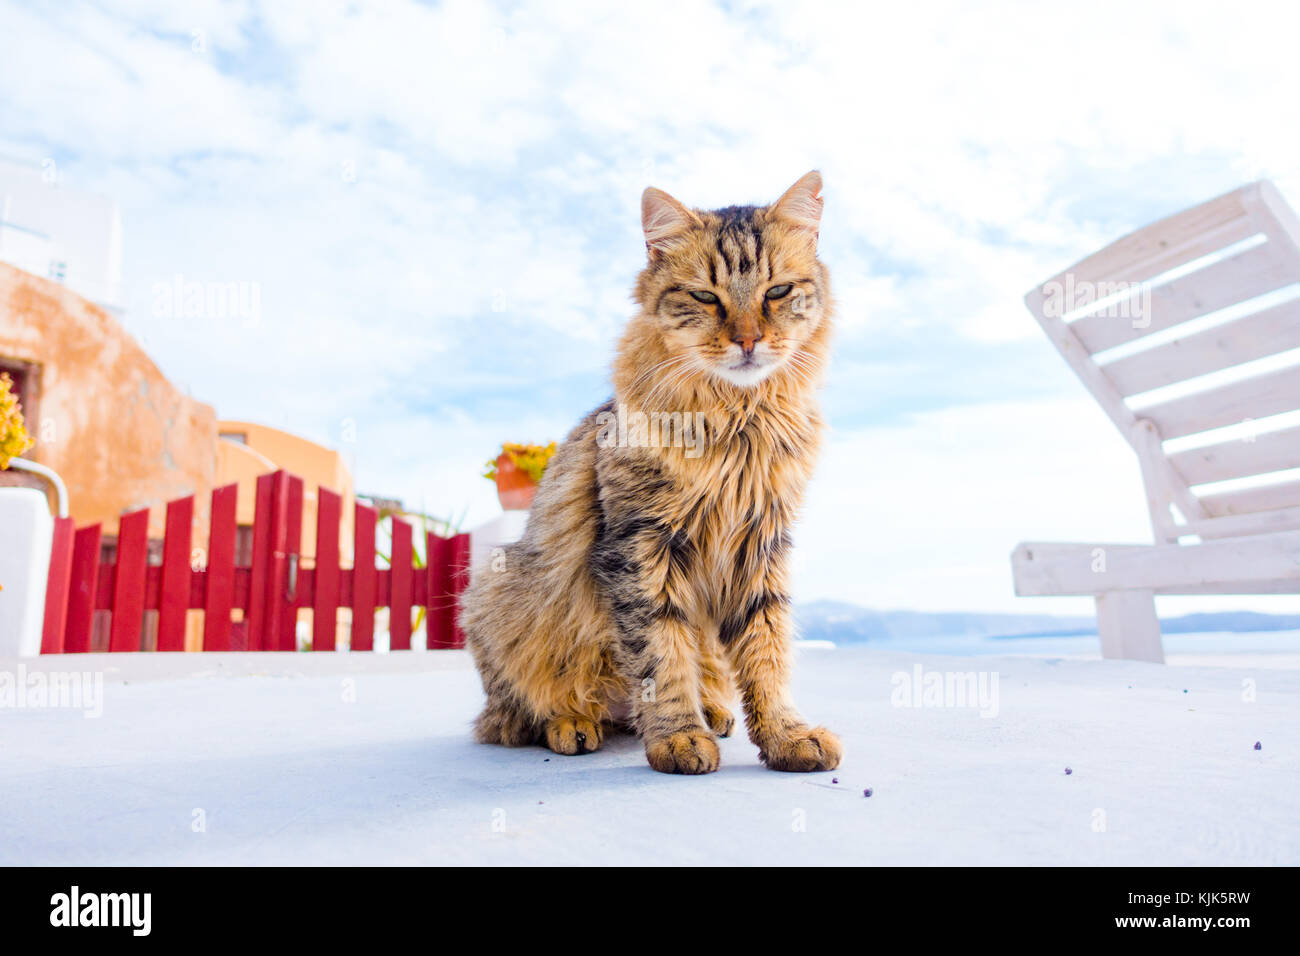 Cat in città oia. Santorini grecia Foto Stock